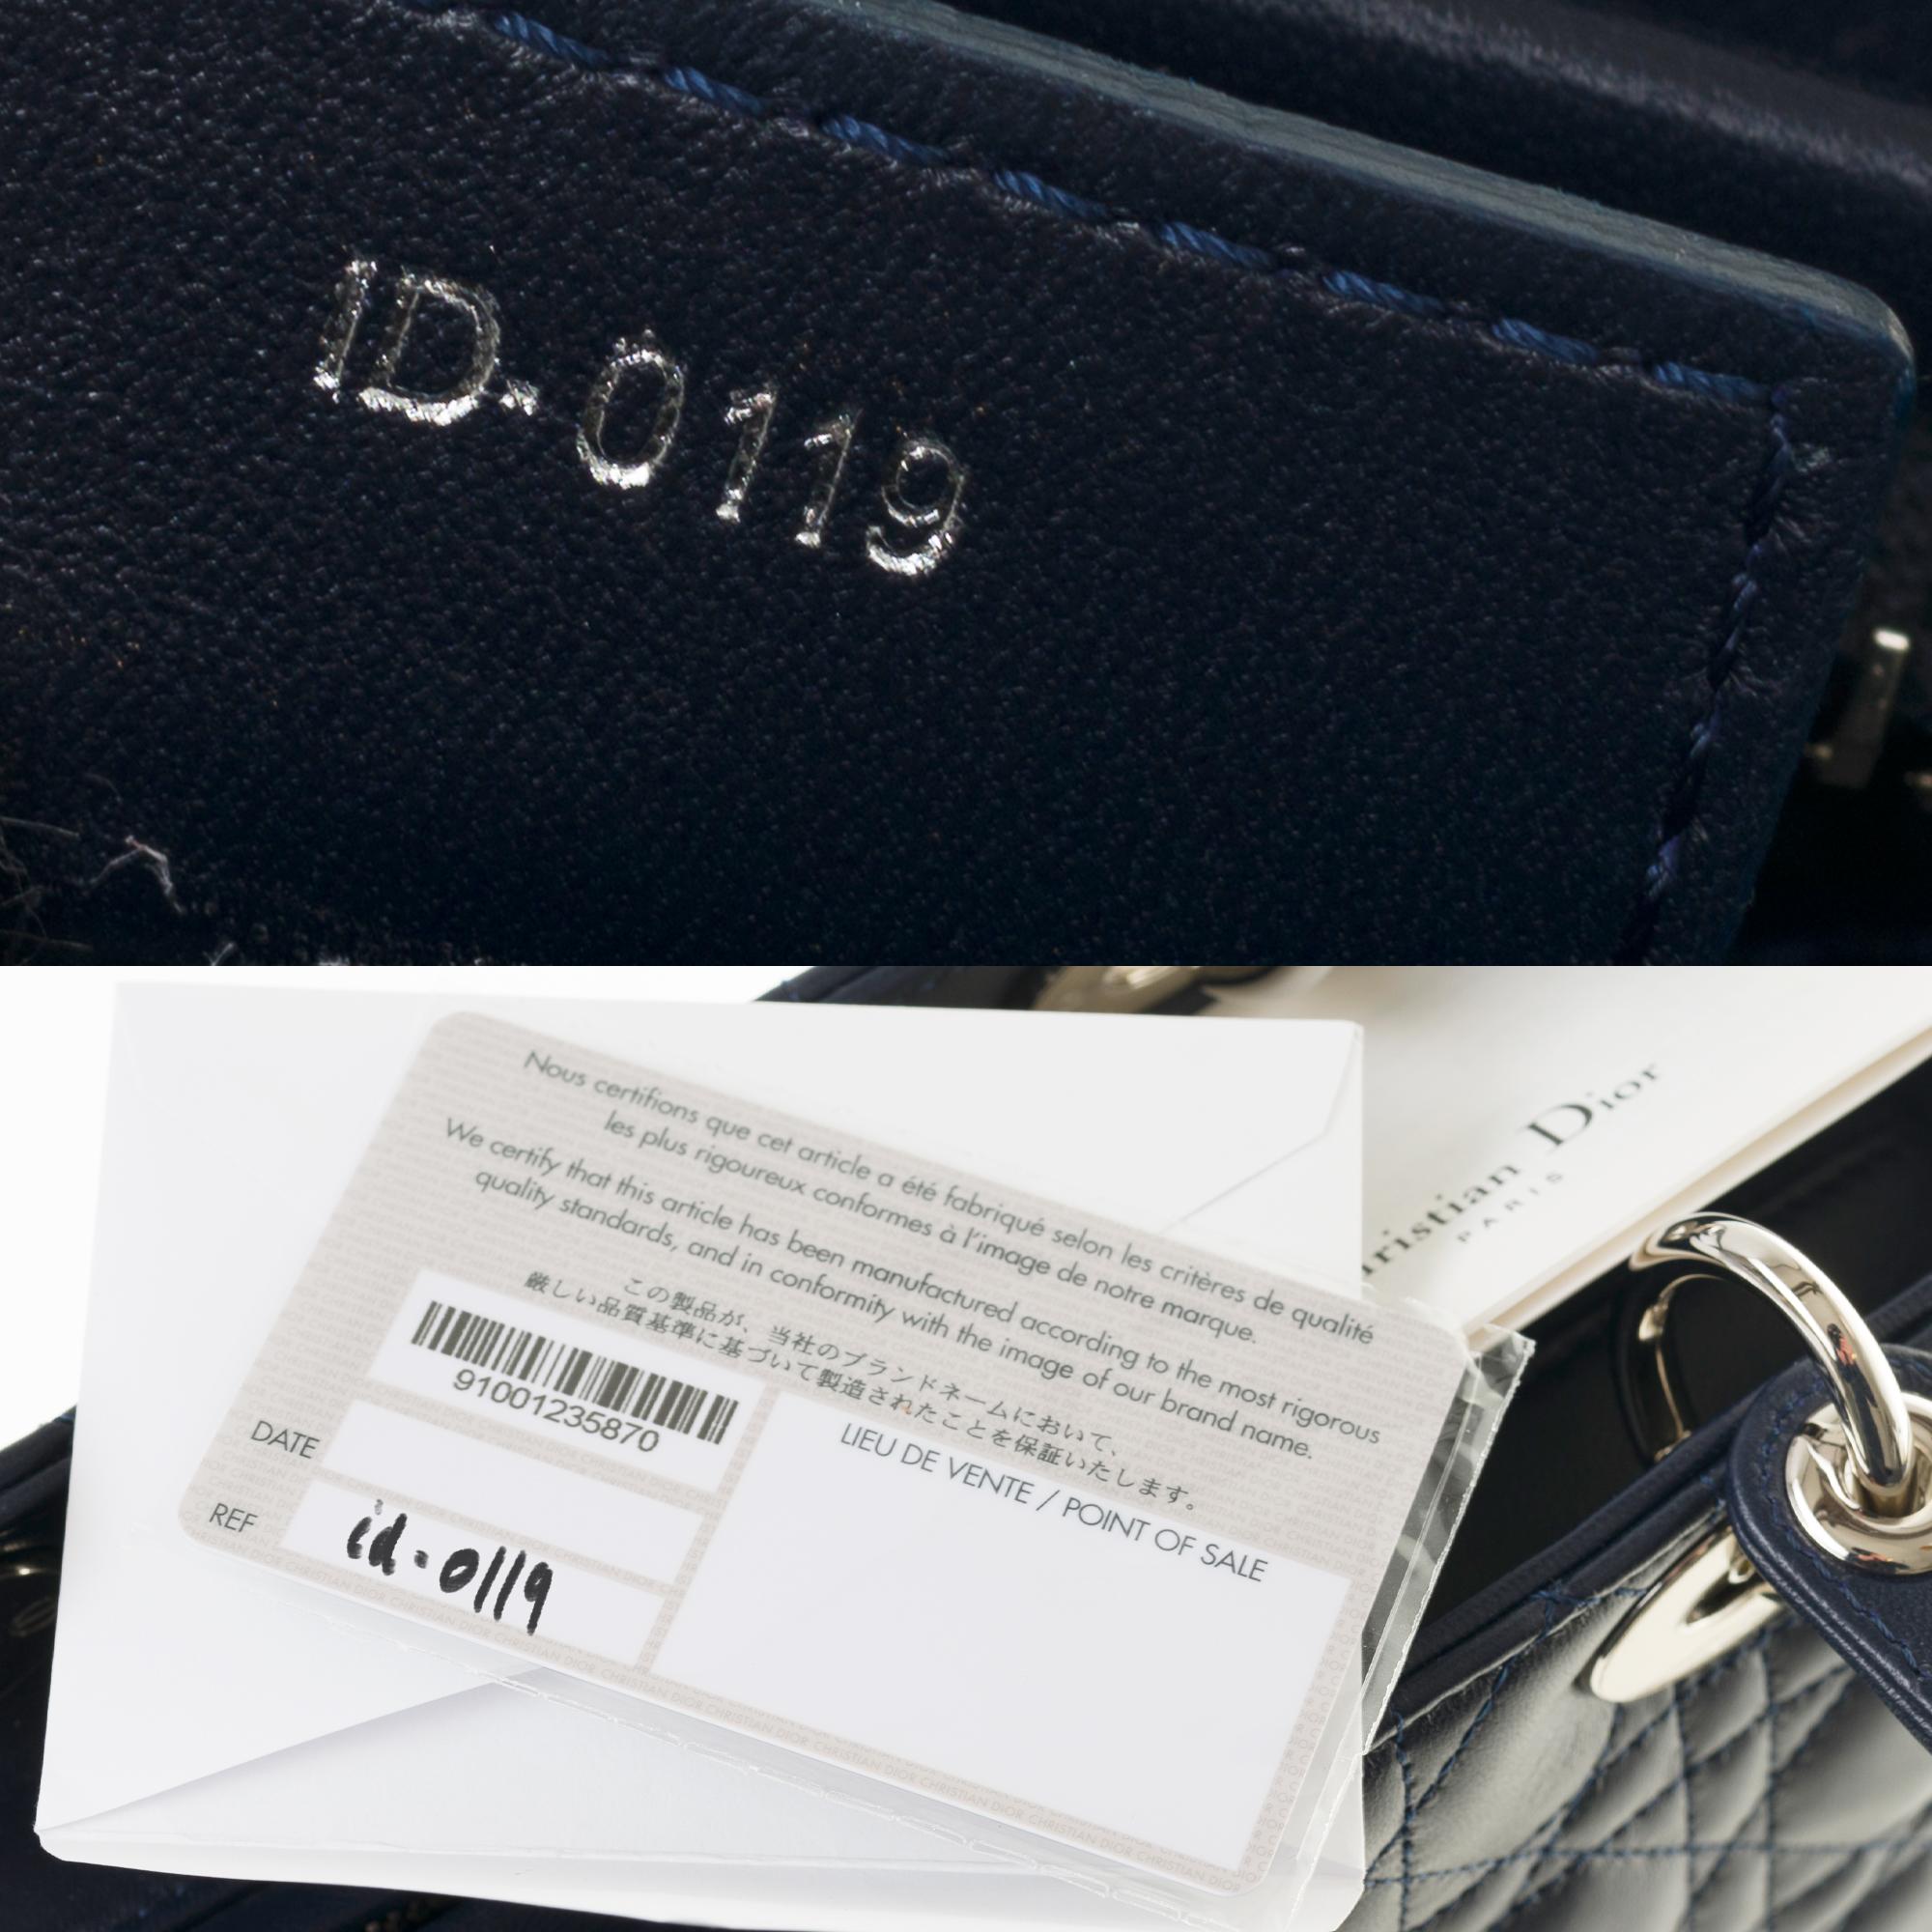  Christian Dior Lady Dior MM (Medium size) handbag in black cannage leather, SHW 1